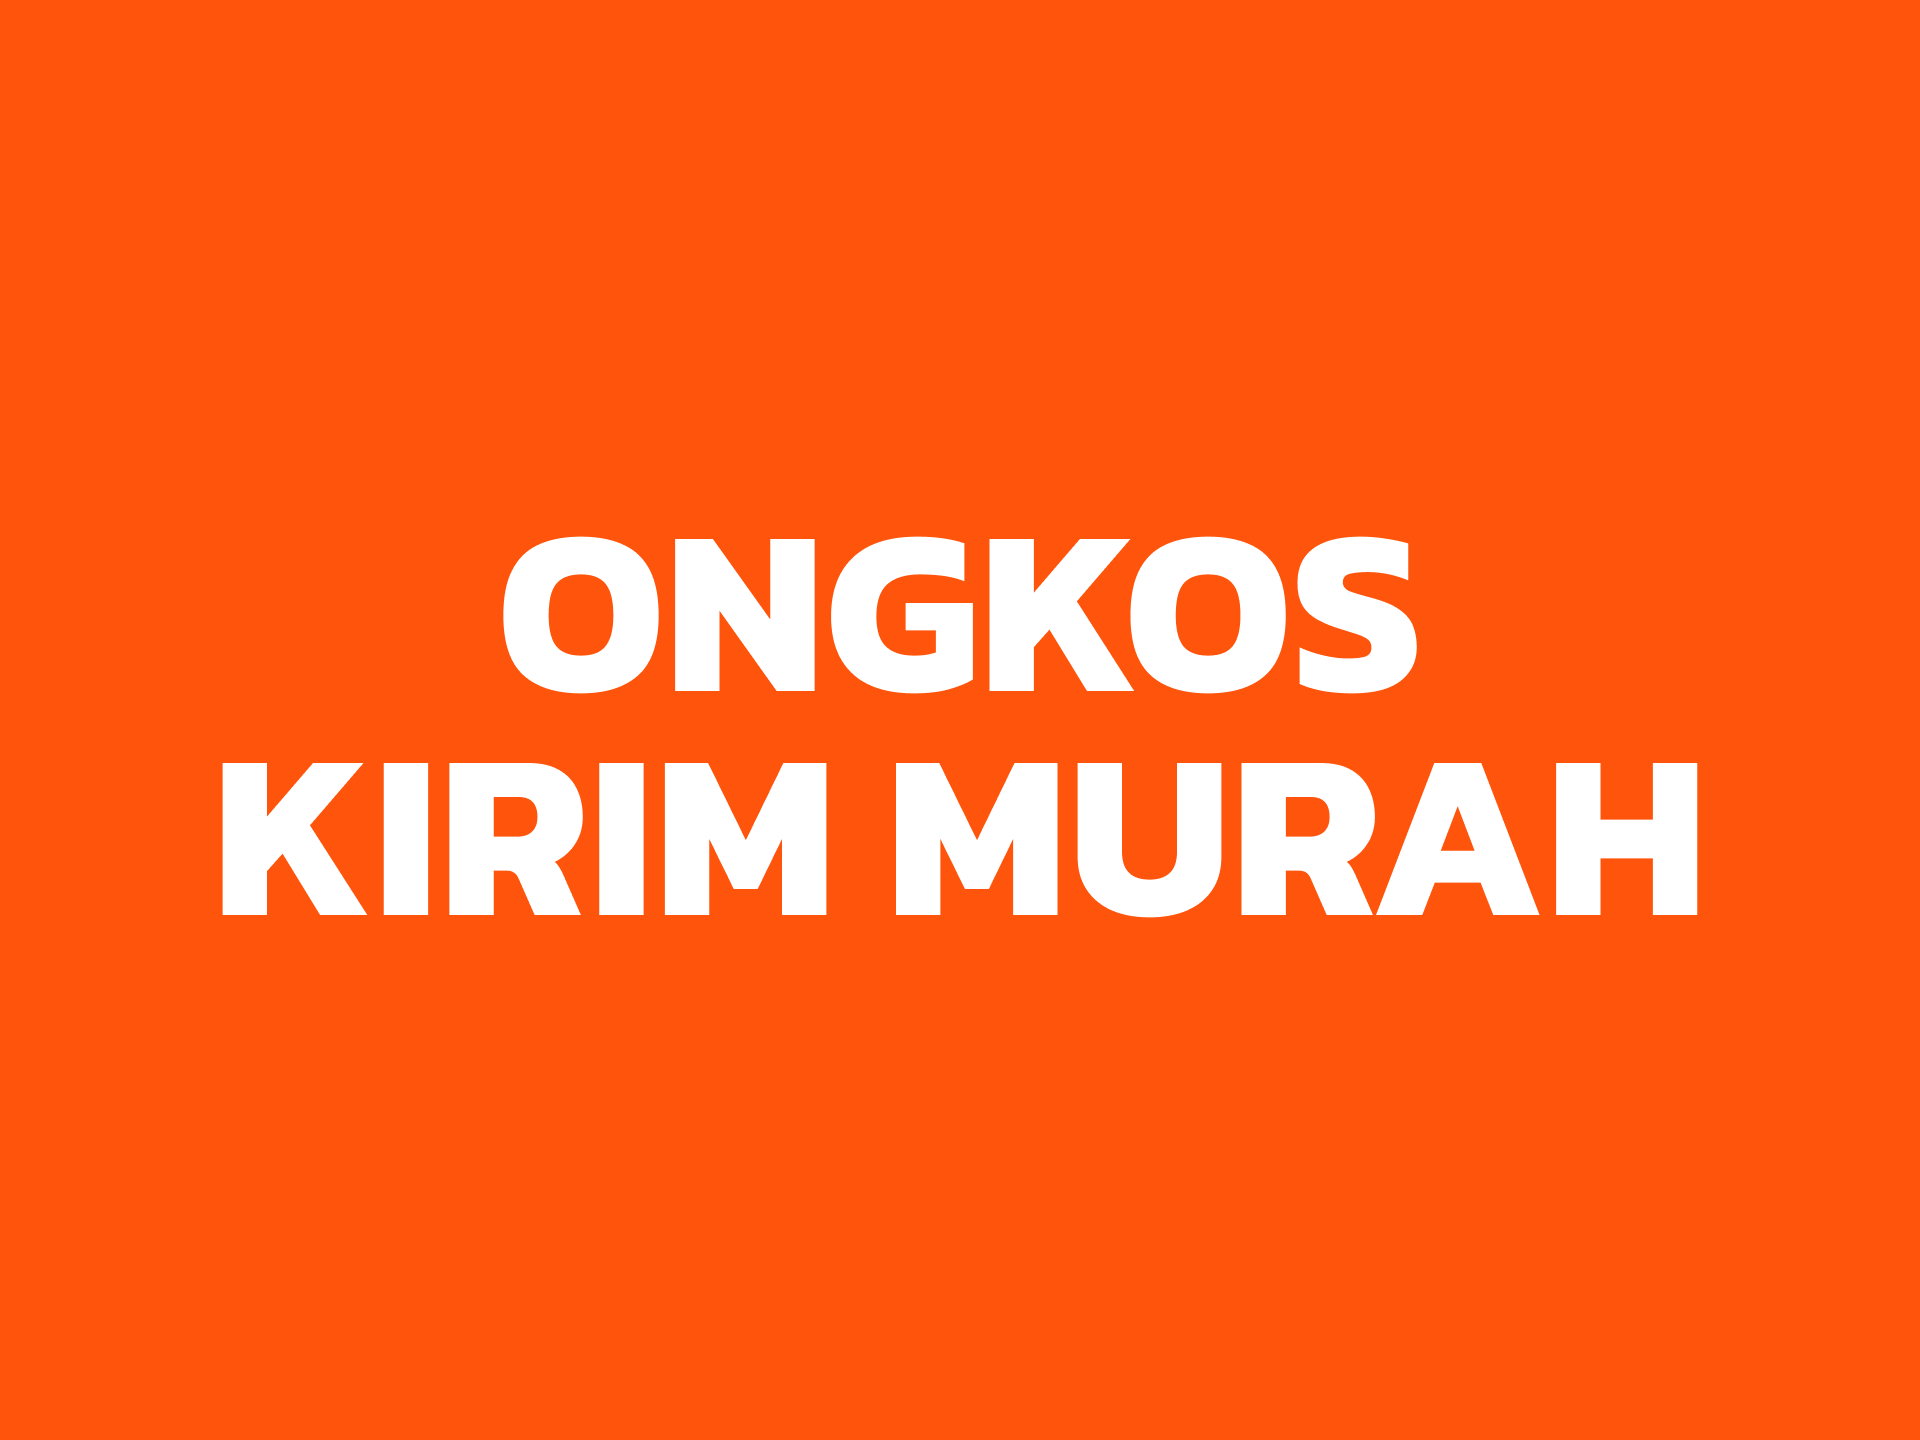 ONGKOS KIRIM MURAH